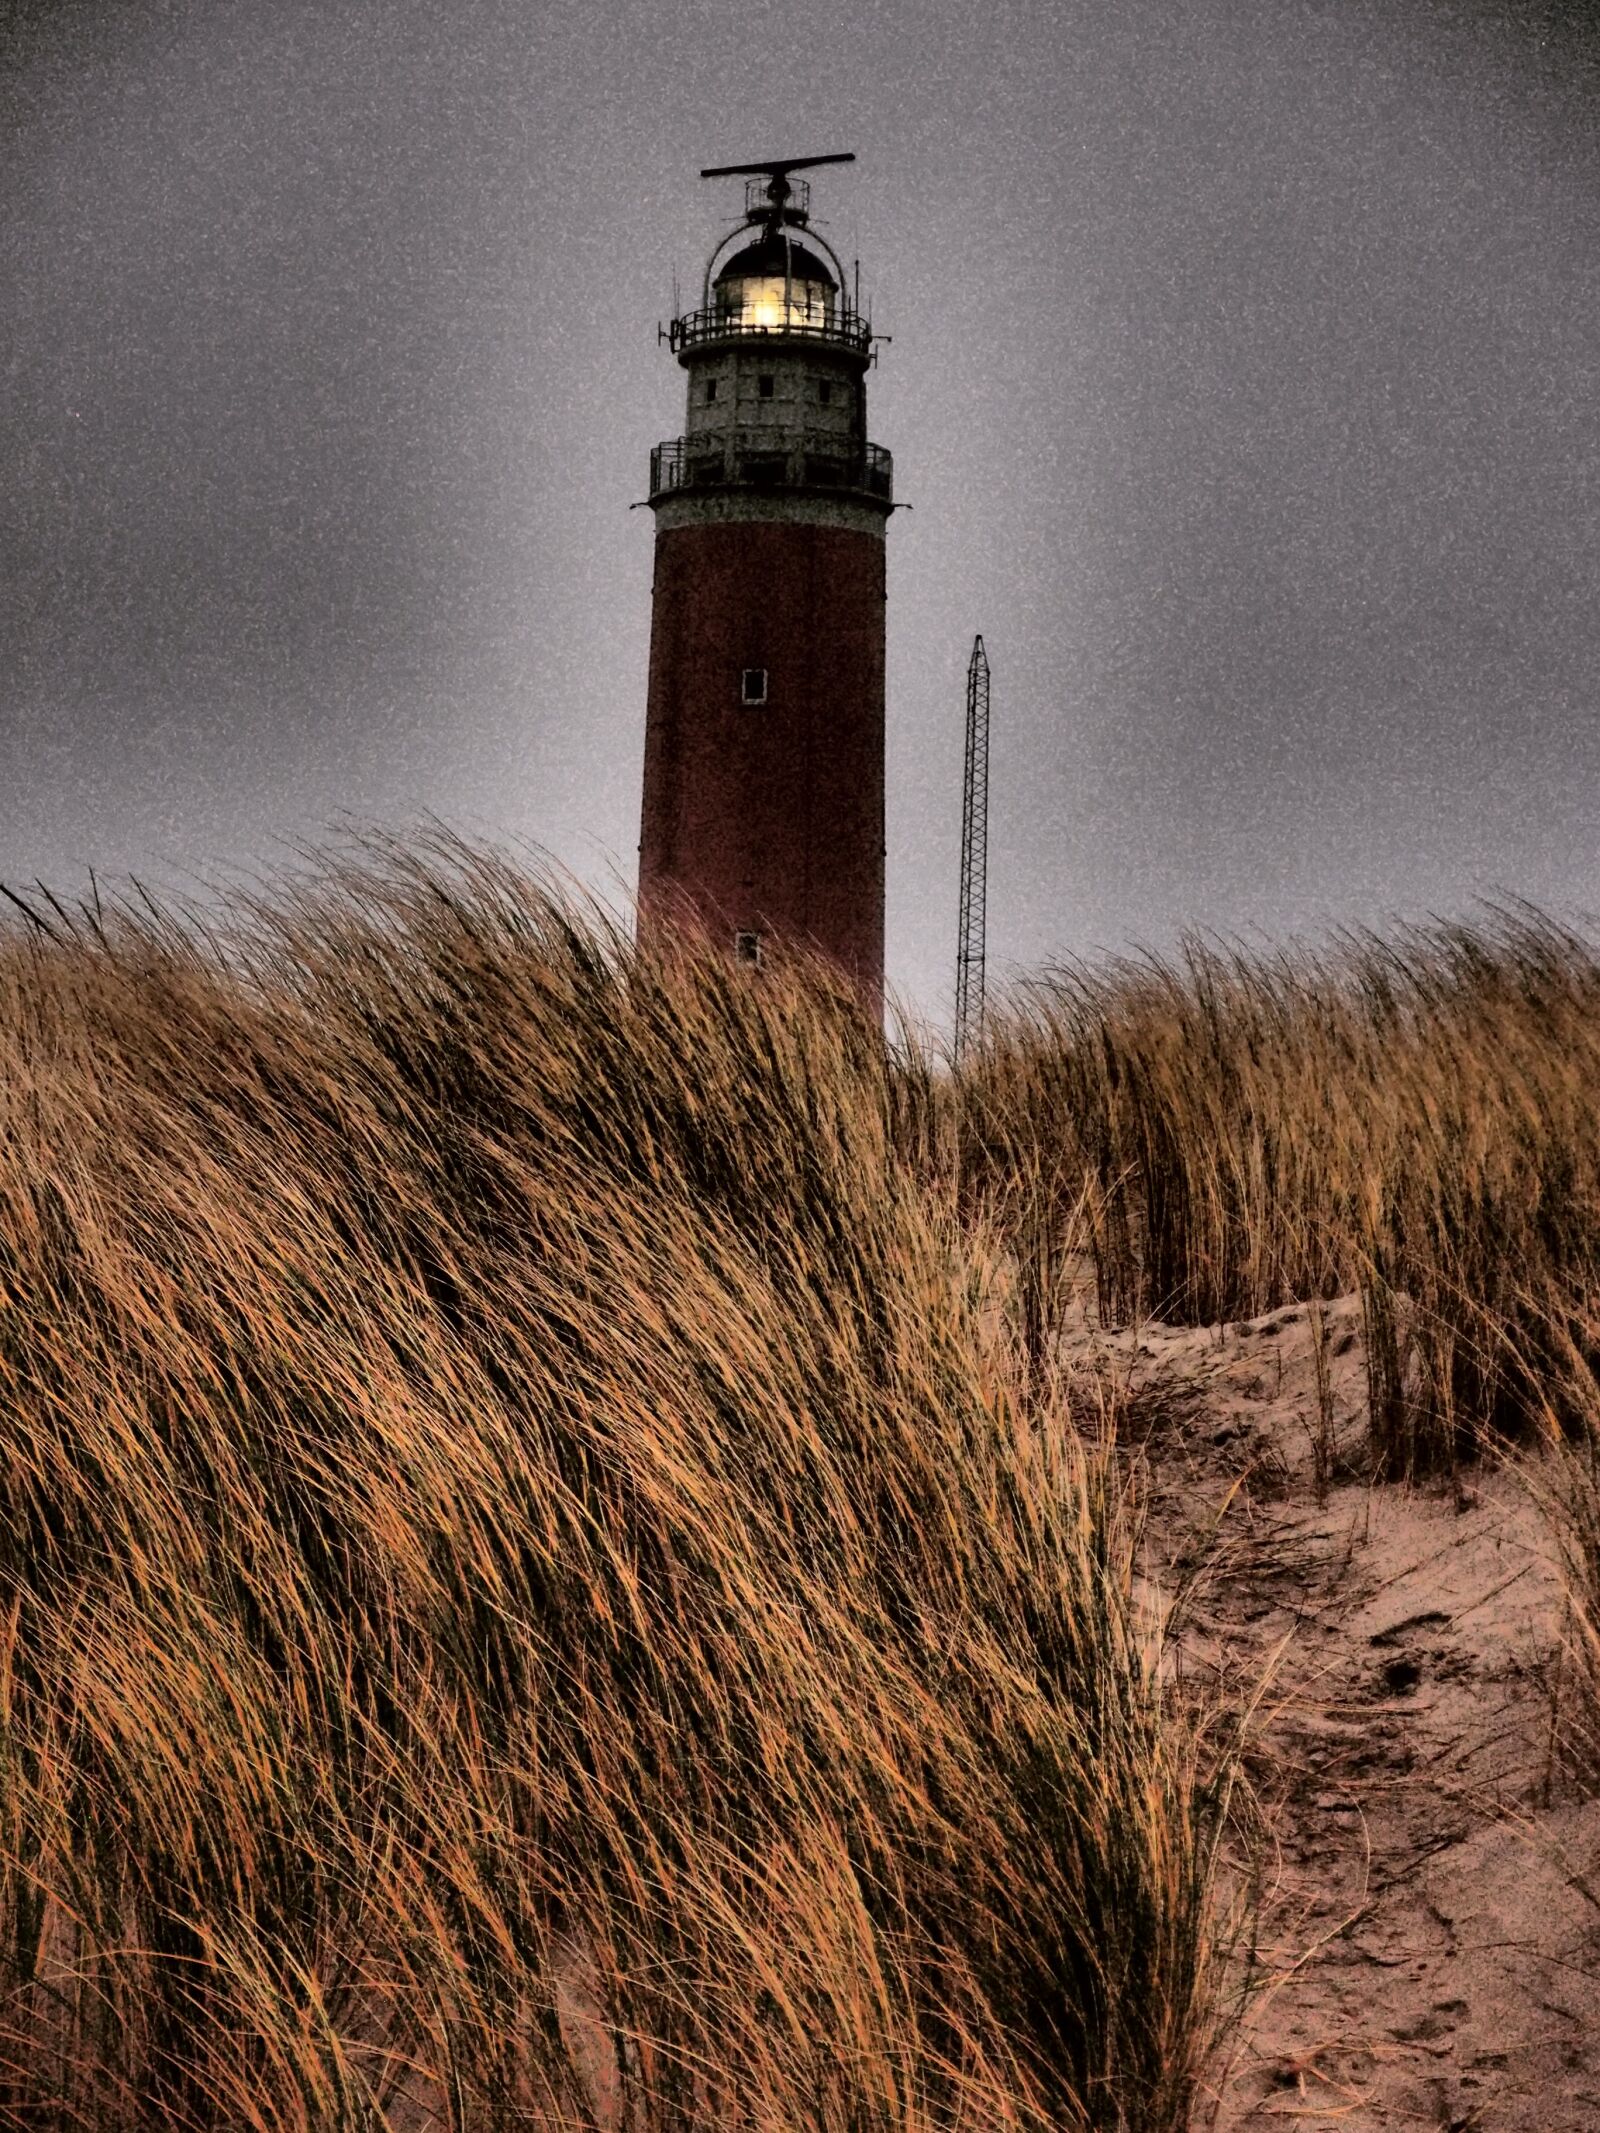 Olympus XZ-1 sample photo. Lighthouse, sea, nature photography